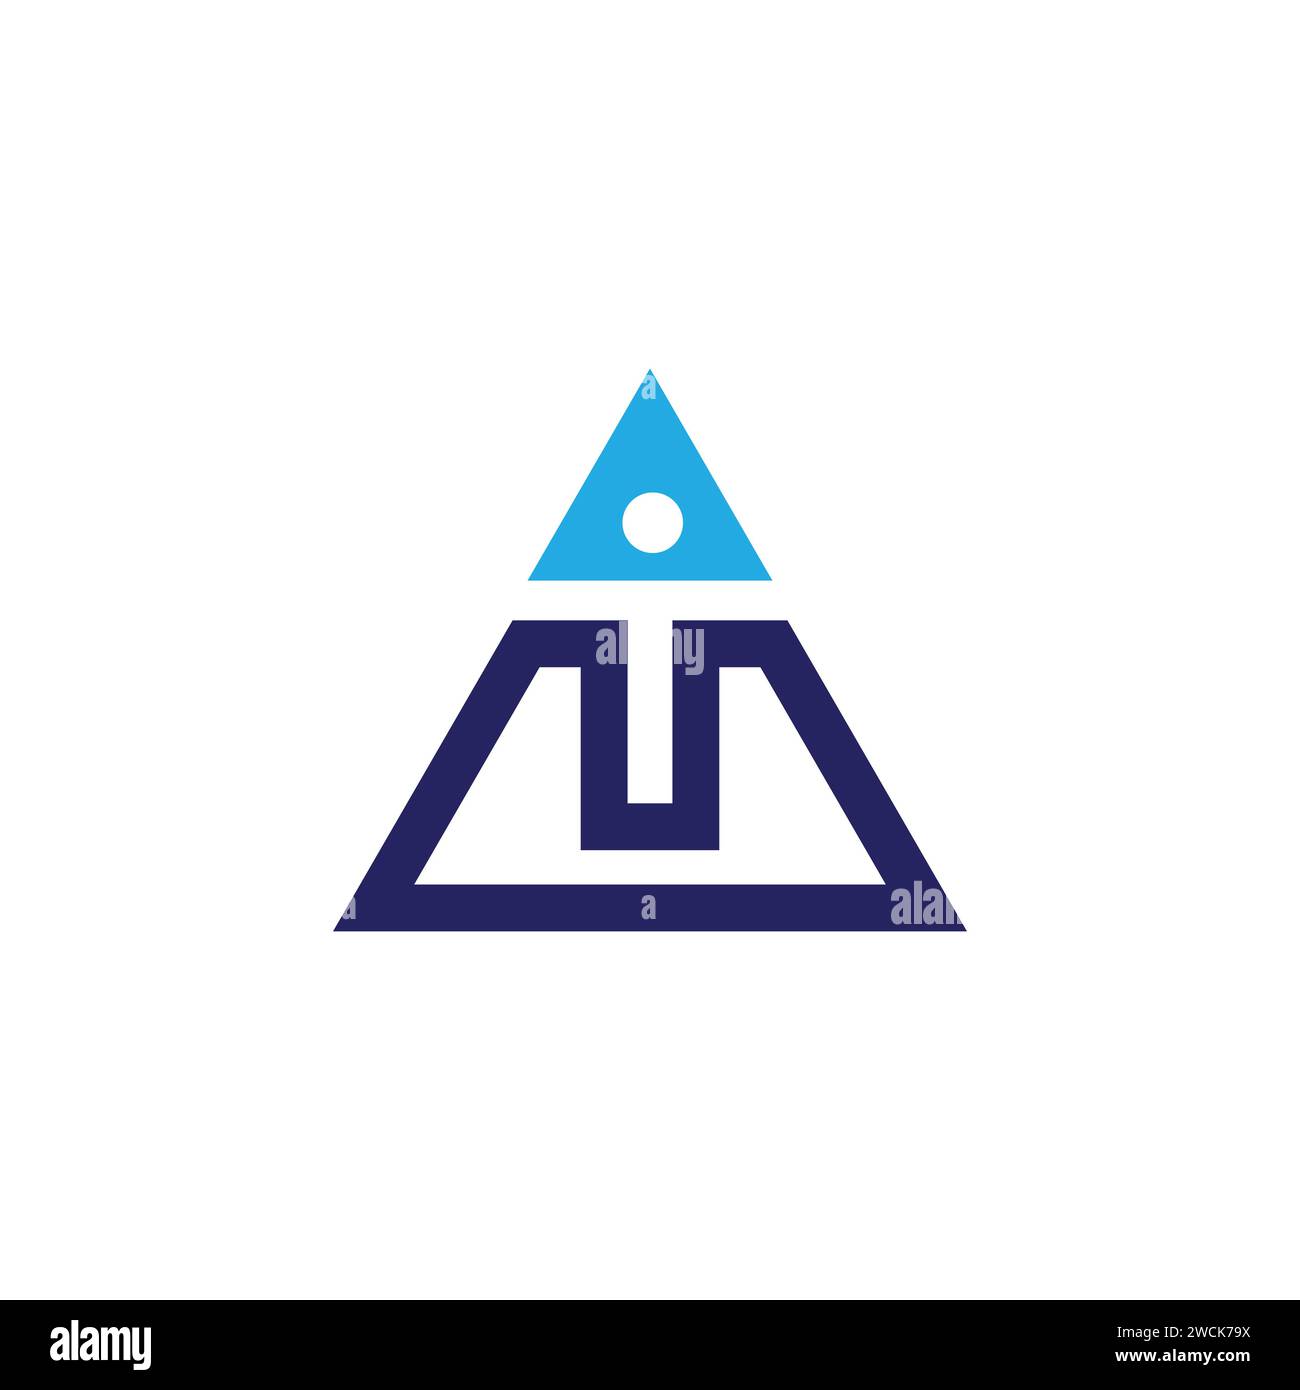 Lettera iniziale del triangolo creativo IN CORRISPONDENZA DEL logo tipografico. Lettera iniziale SUL logo all'interno della forma a triangolo isolata su sfondo bianco Illustrazione Vettoriale